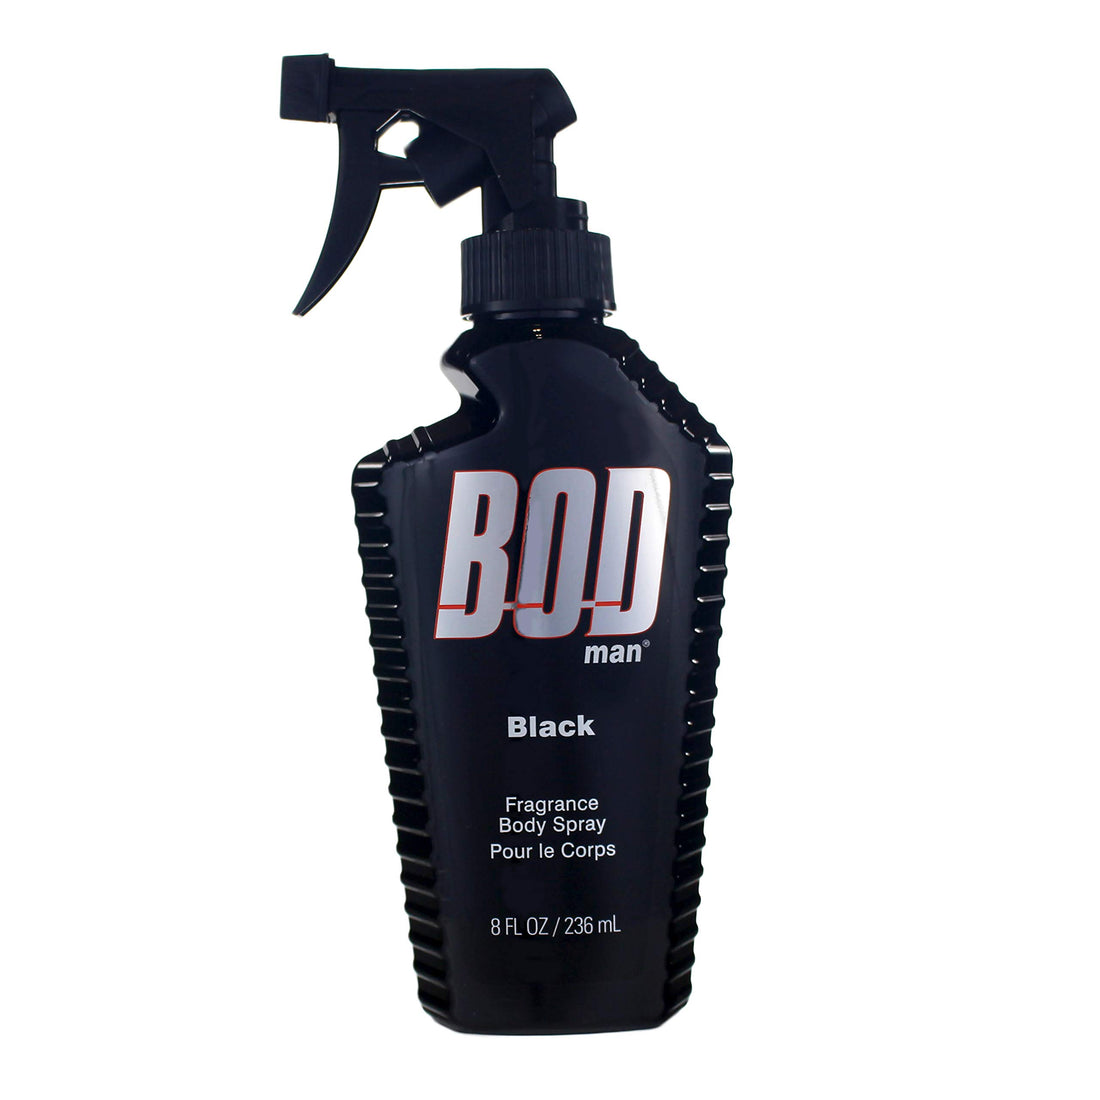 BOD Man Black Unisex Body Spray - Body mist